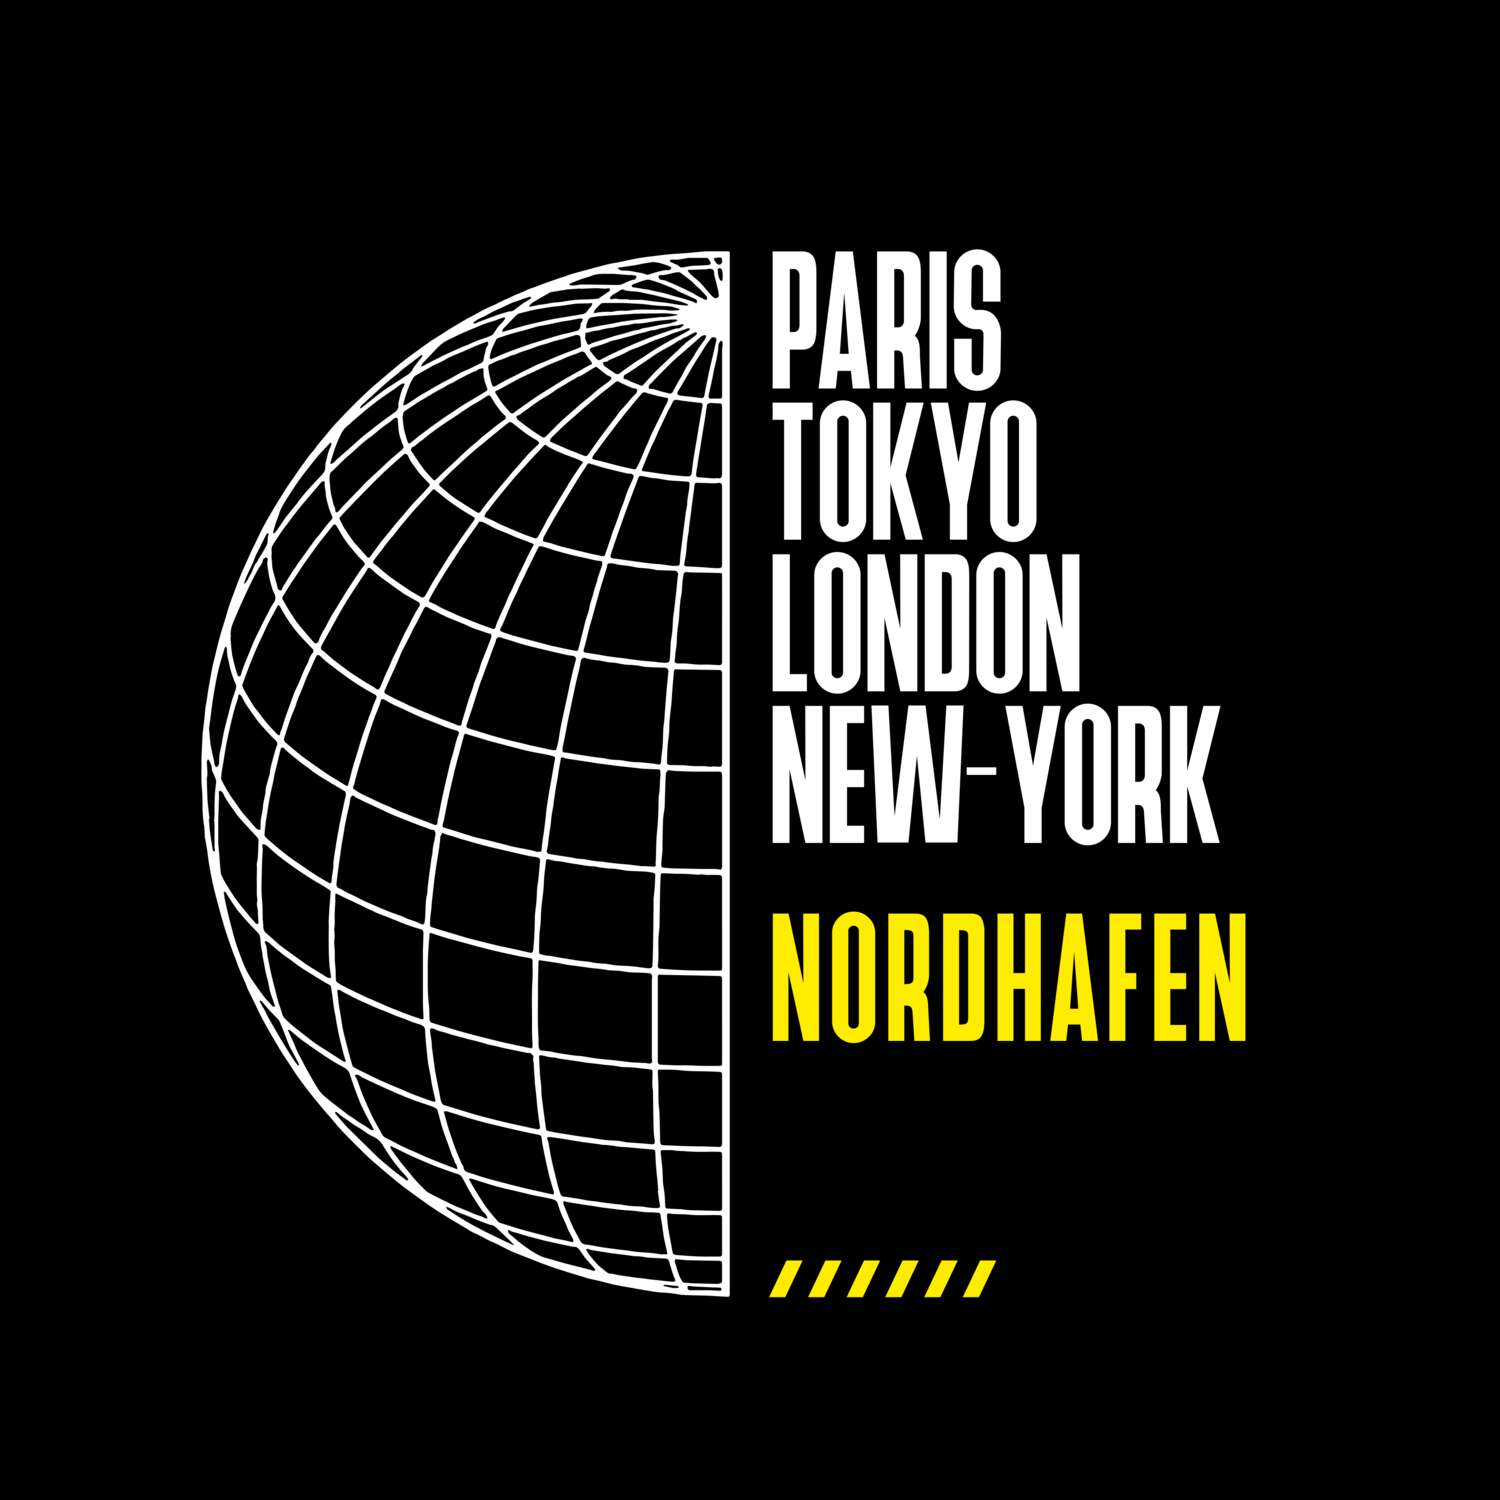 Nordhafen T-Shirt »Paris Tokyo London«